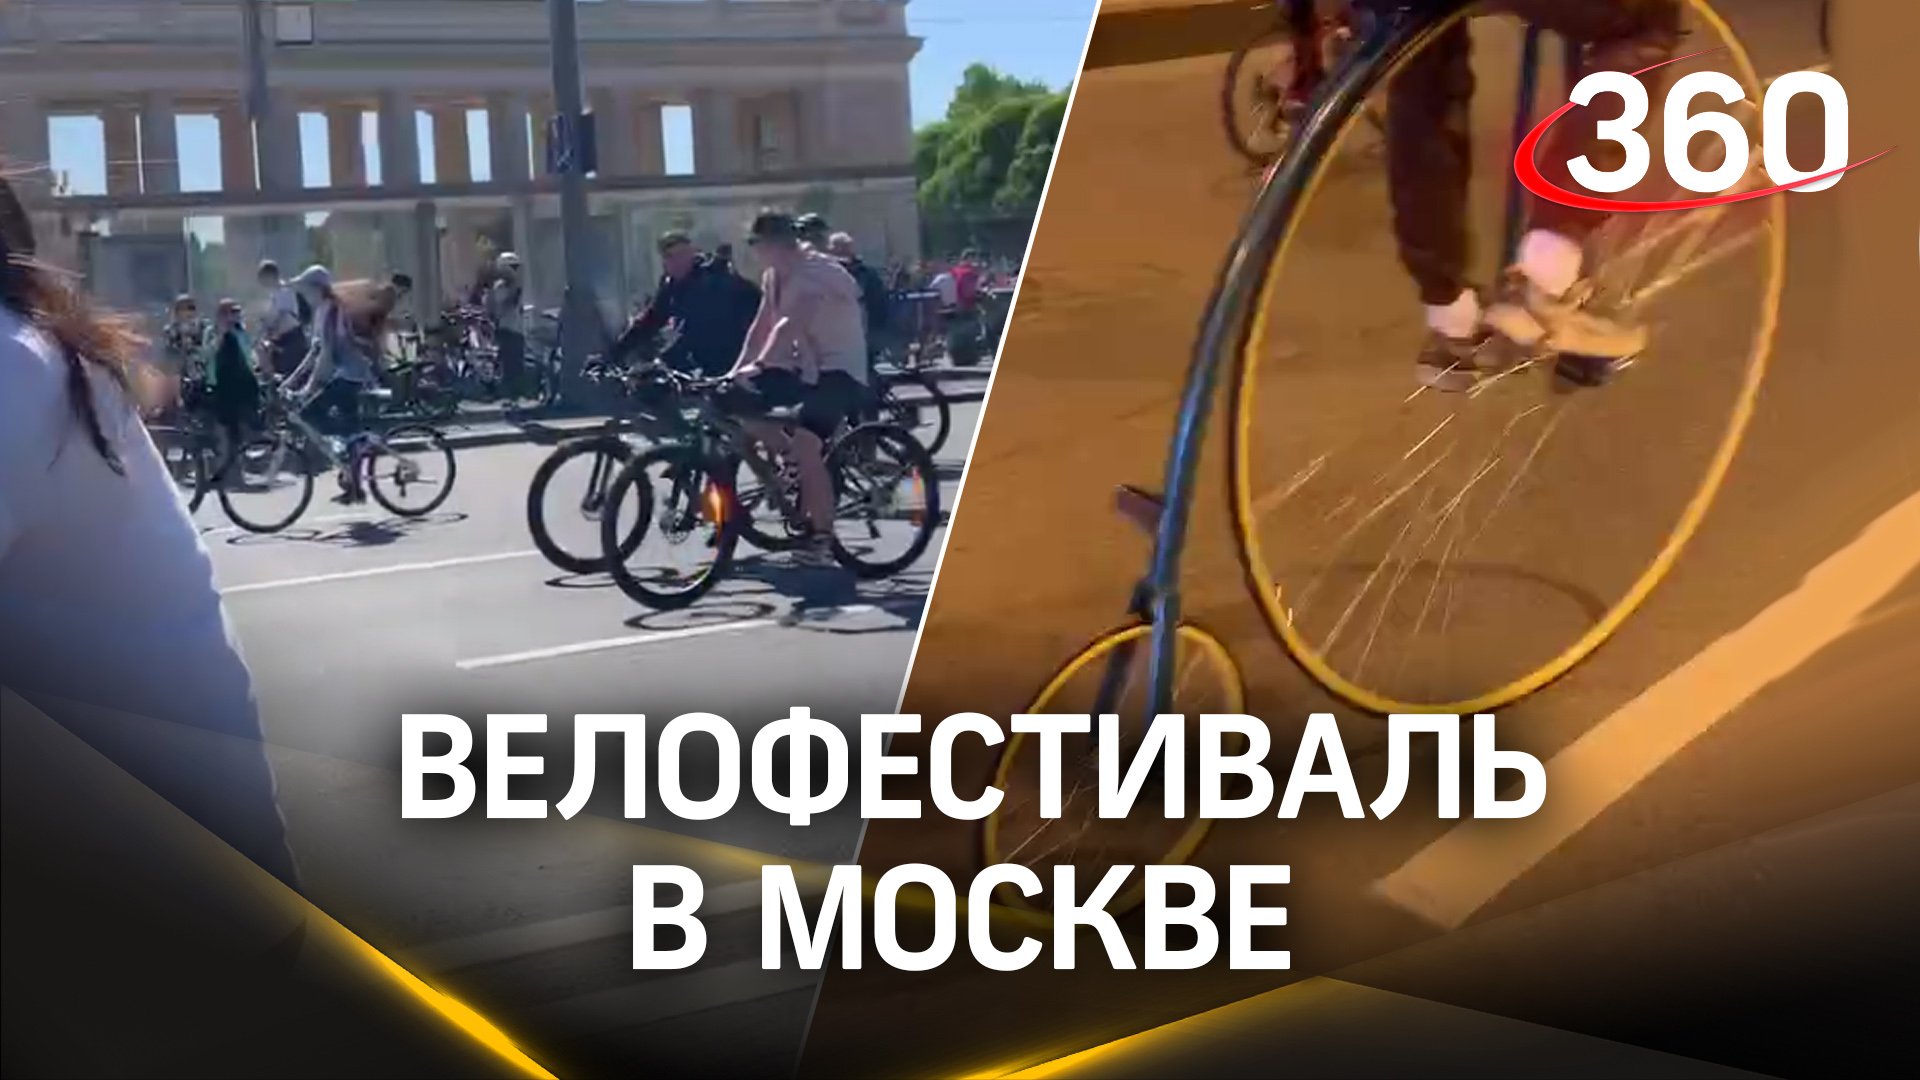 Более 50 тысяч человек сегодня собрались на весенний велофестиваль в Москве